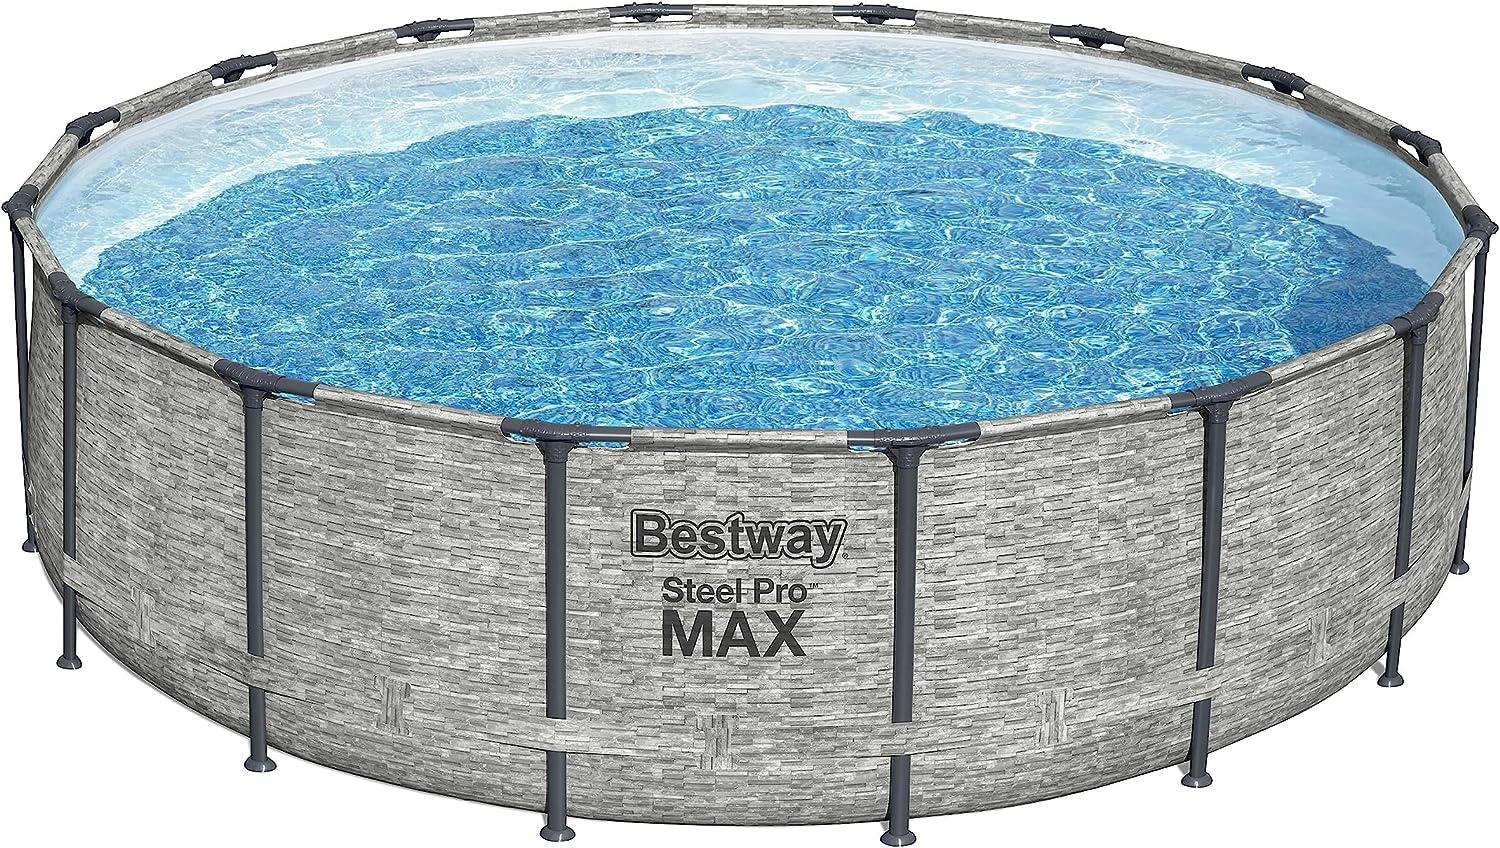 Bestway 'Frame Pool Steel Pro MAX Set', 488 x 122 cm, inkl. Pumpe, Leiter, Abdeckung Bild 1